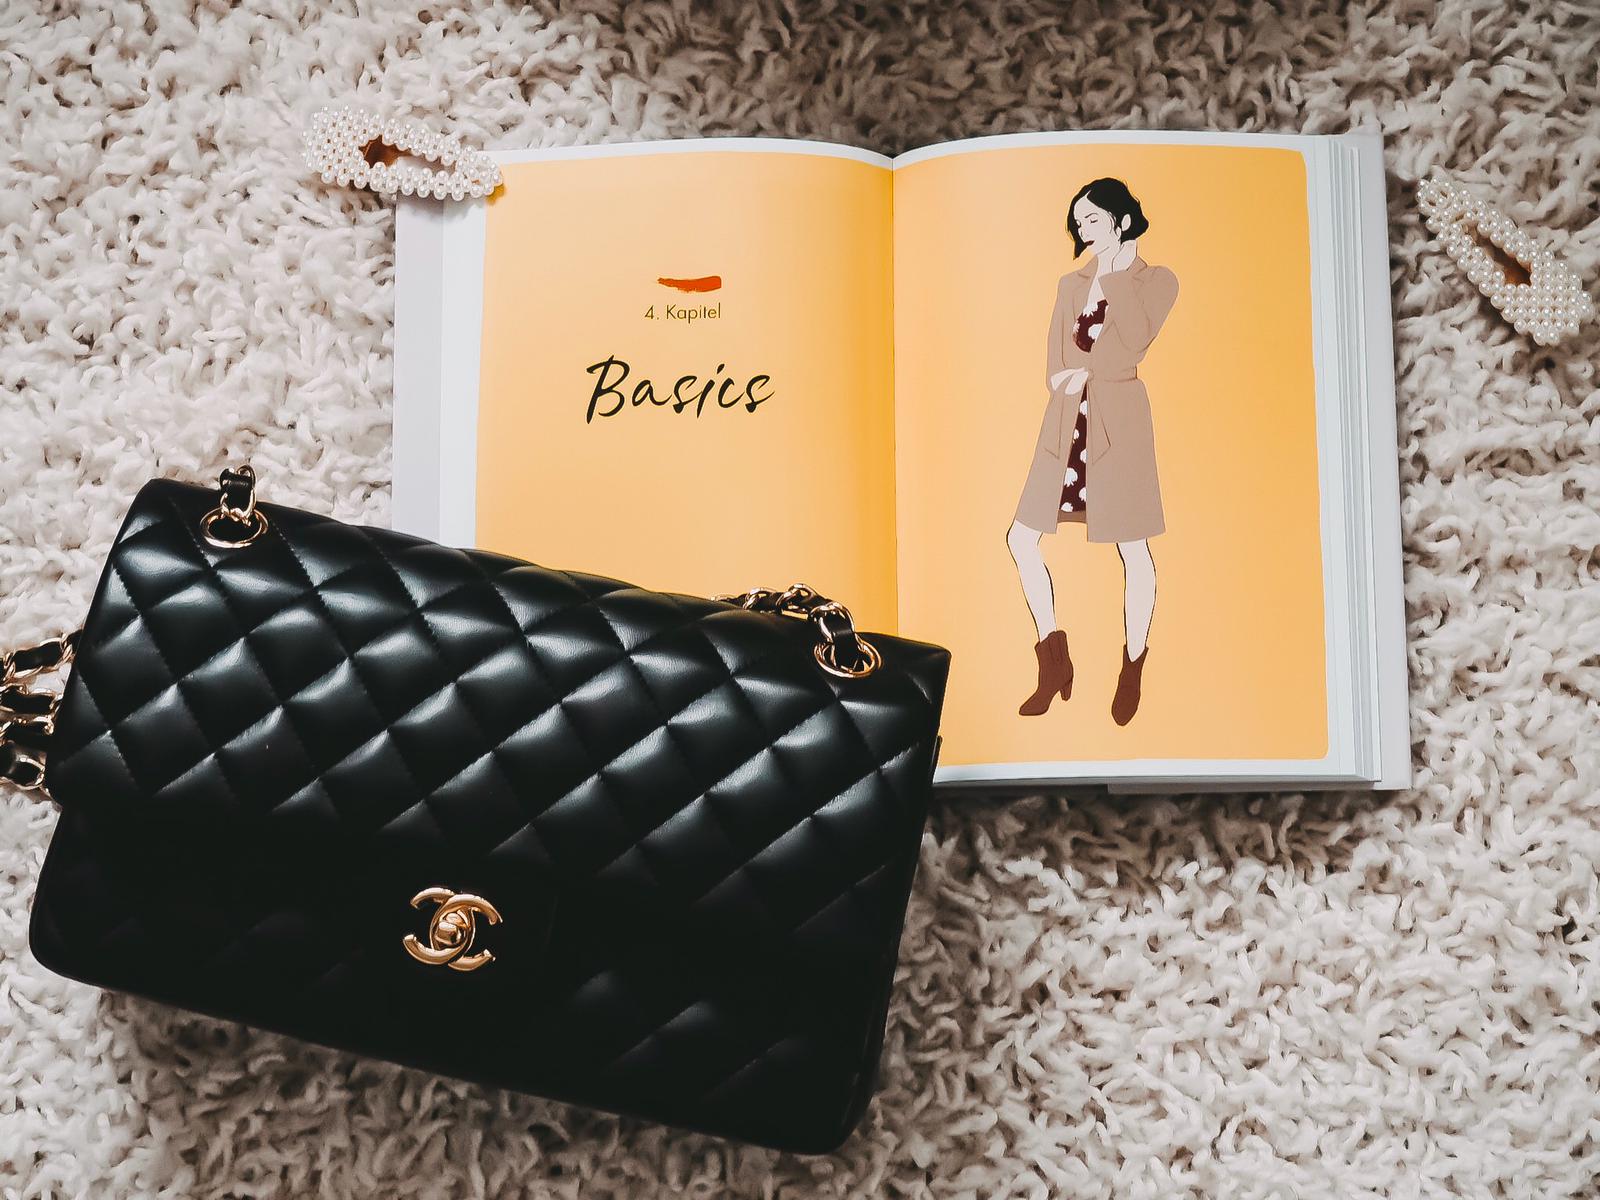 In dem Buch "Dress like a Parisian" findet ihr tolle Tipps zum Zusammenstellen von Mode-Kombis wir eine Französin. HIER mehr vom Pariser Chique Ratgeber !